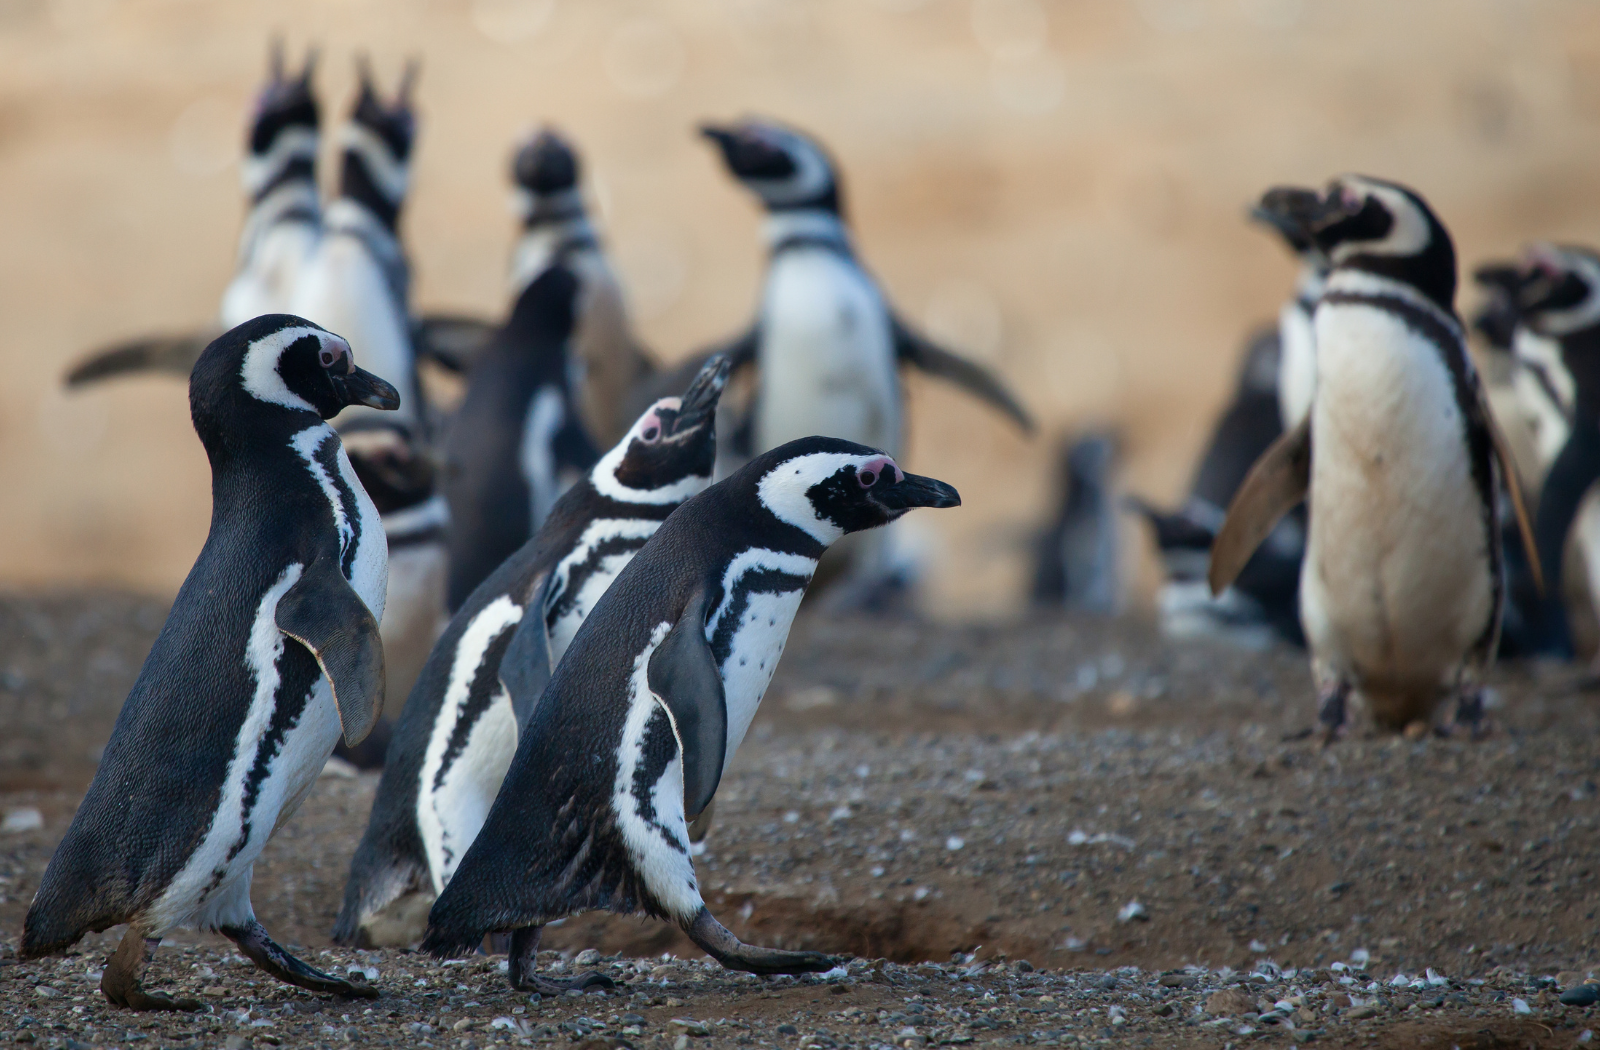 Magellanic penguins in Patagonia, Chile